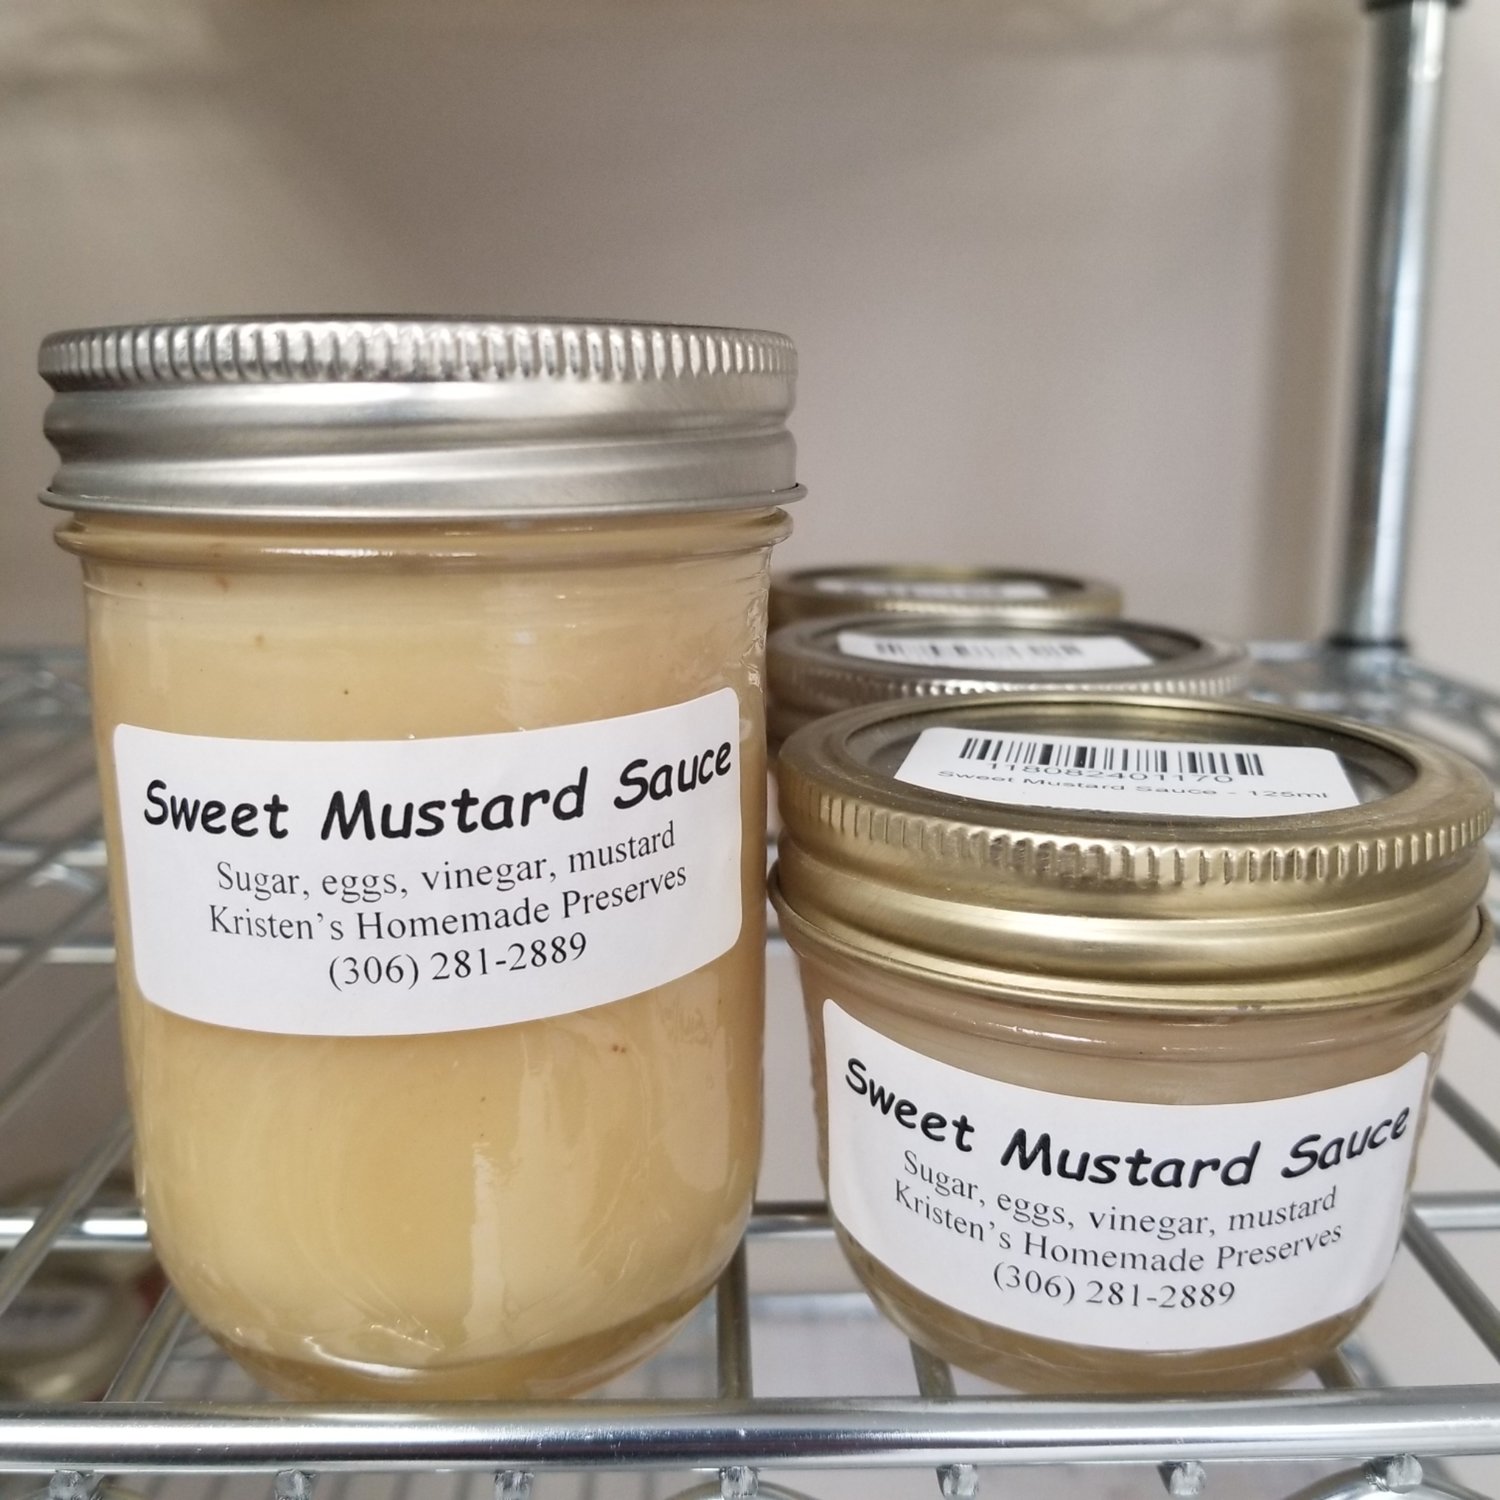 Sweet Mustard Sauce